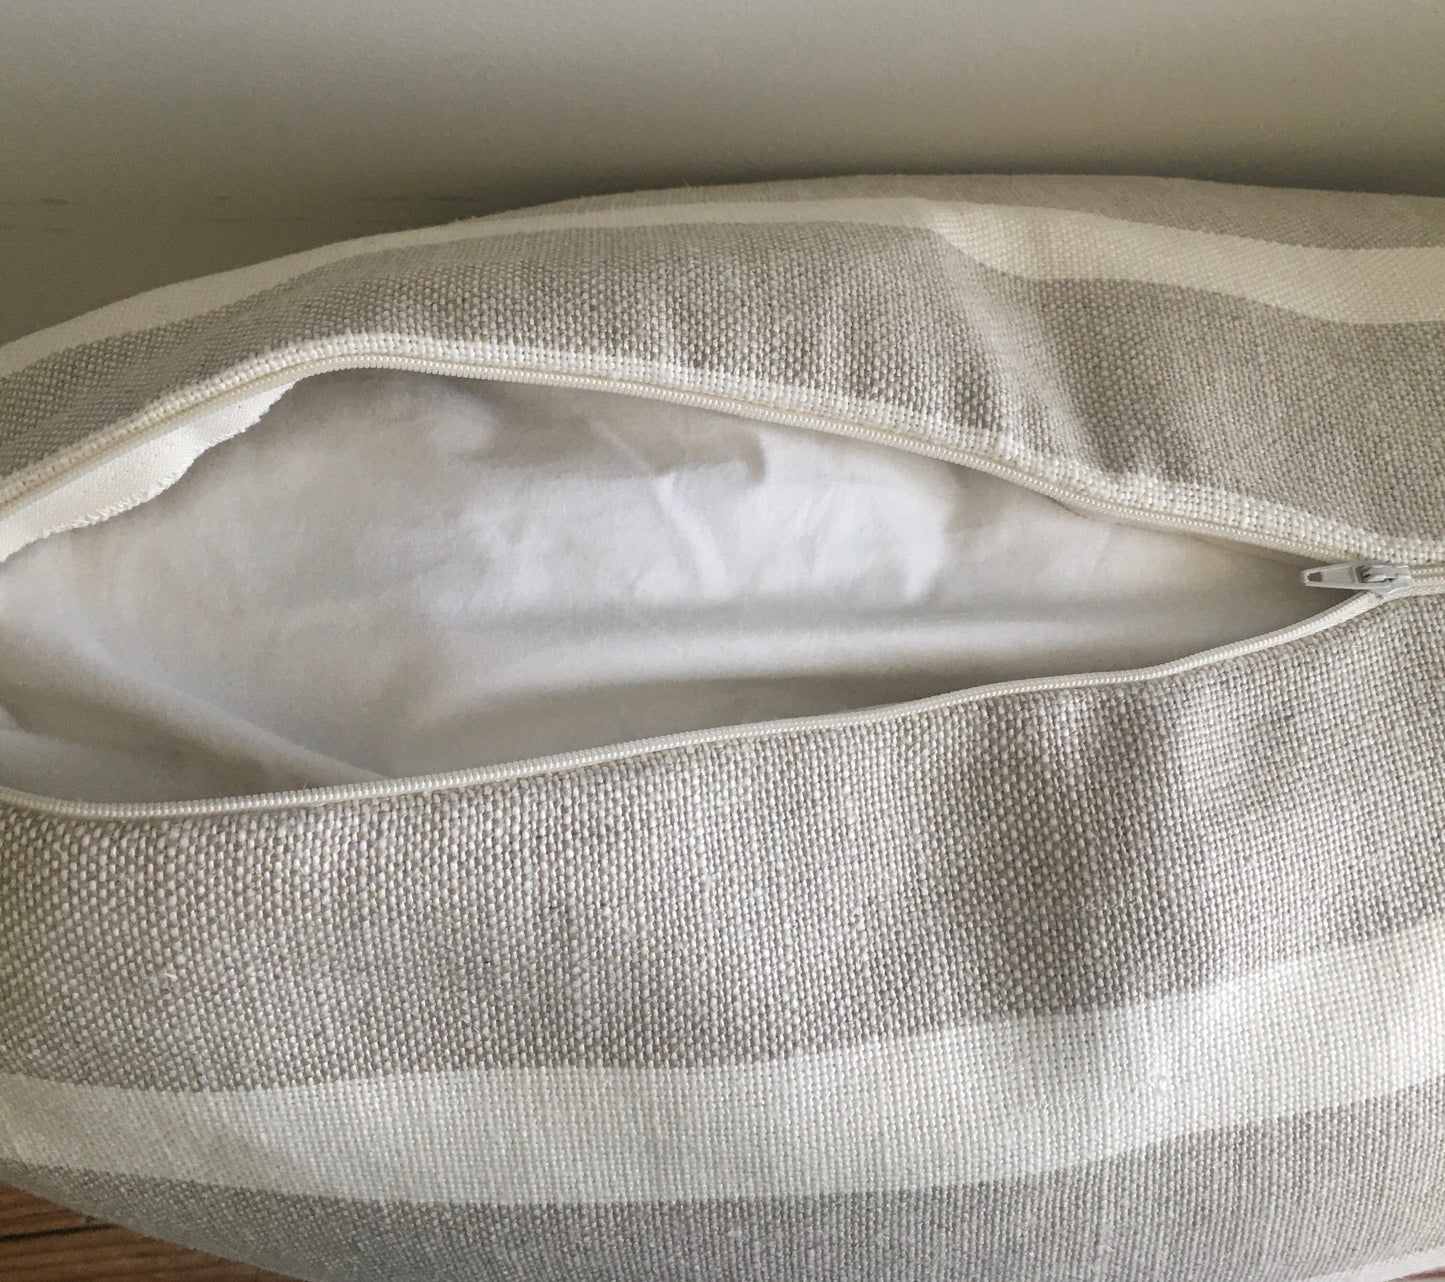 Ecru & Sand Linen Pillow Shams - (Pair)